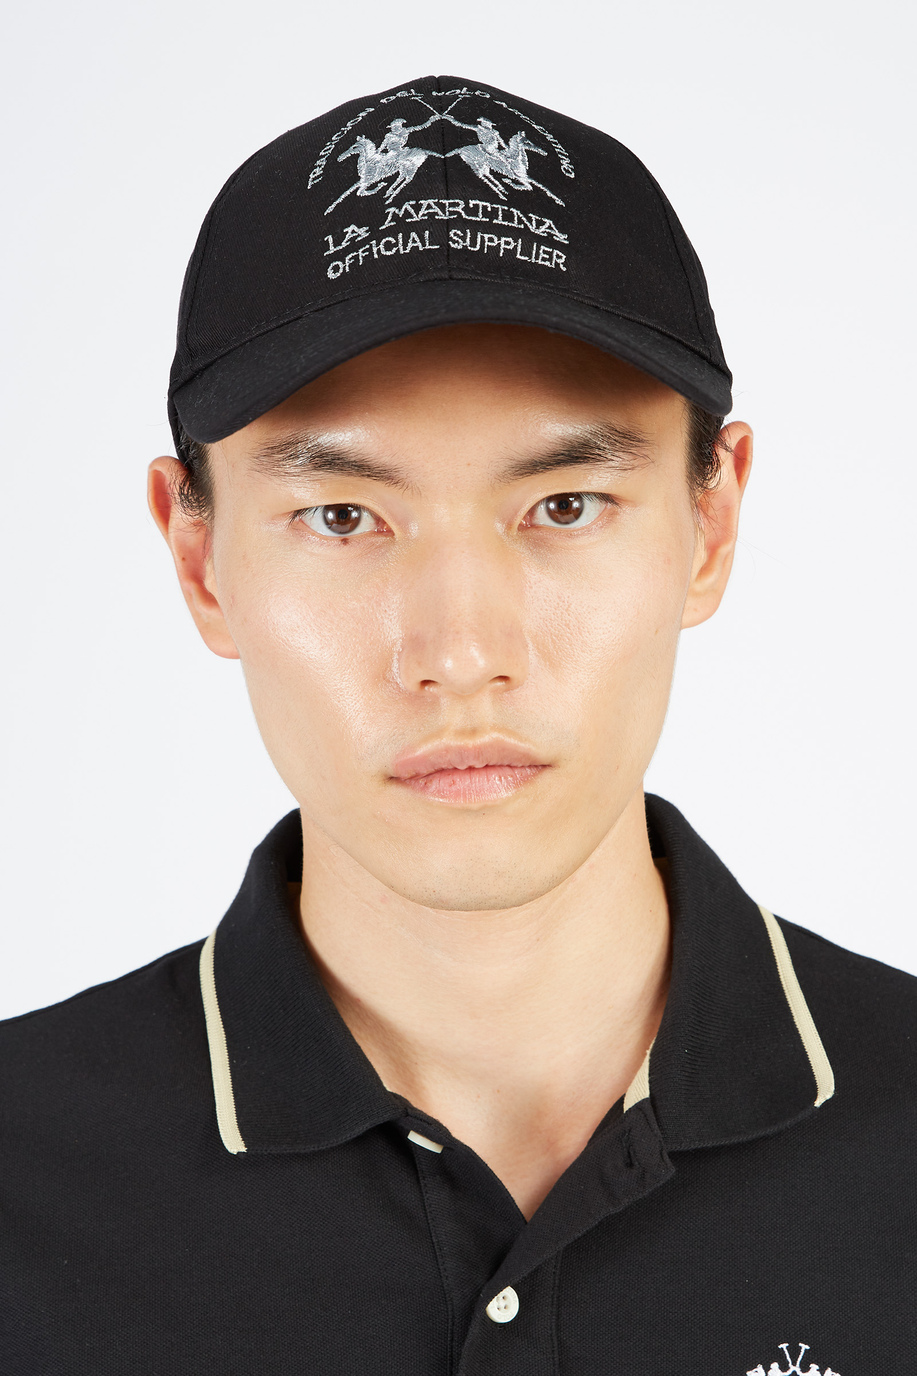 Unisex baseball cap with adjustable regular fit closure - Hats | La Martina - Official Online Shop